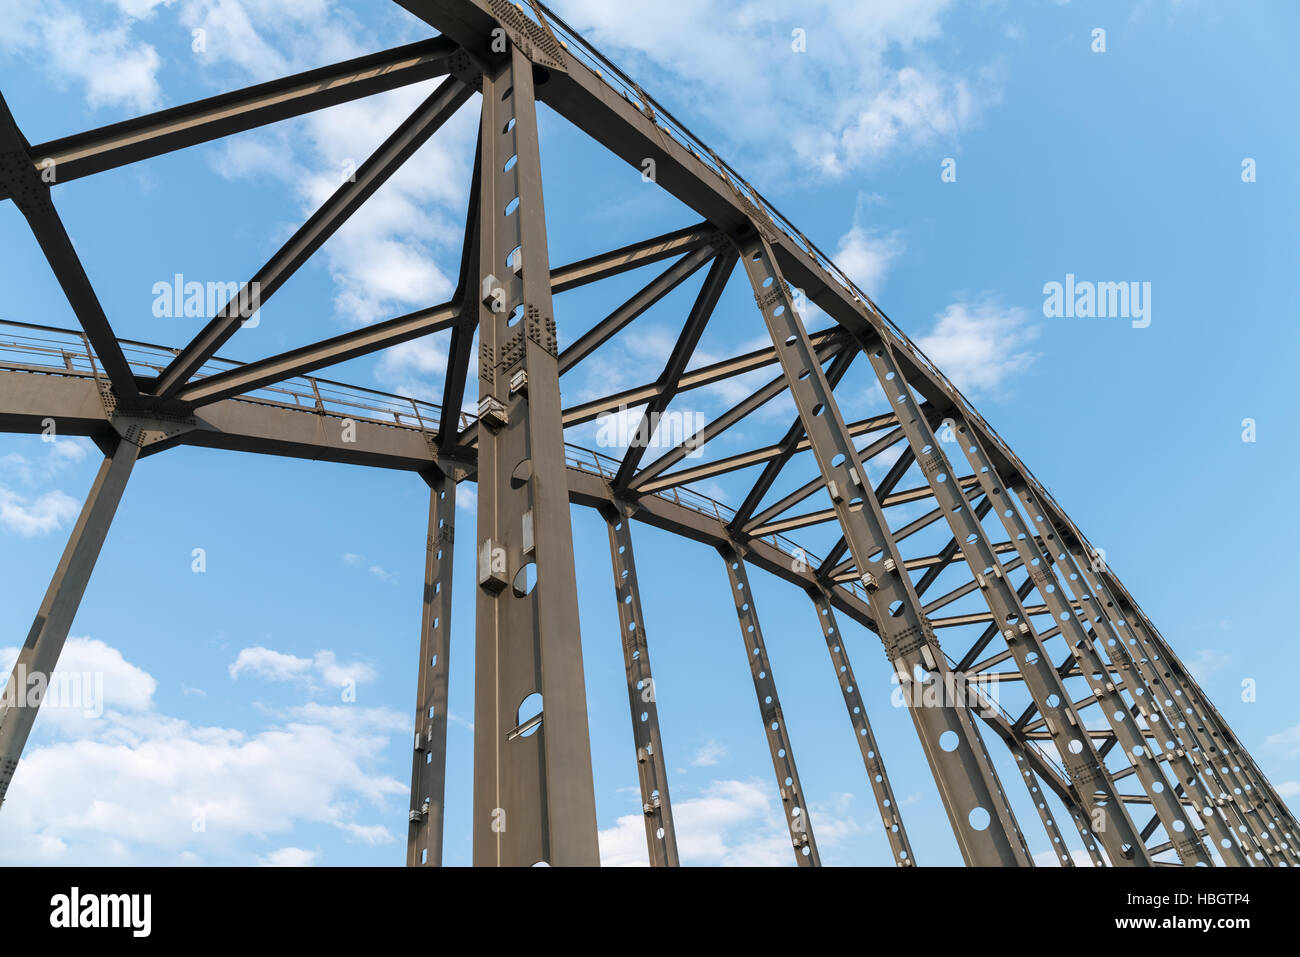 steel bridge arches Stock Photo